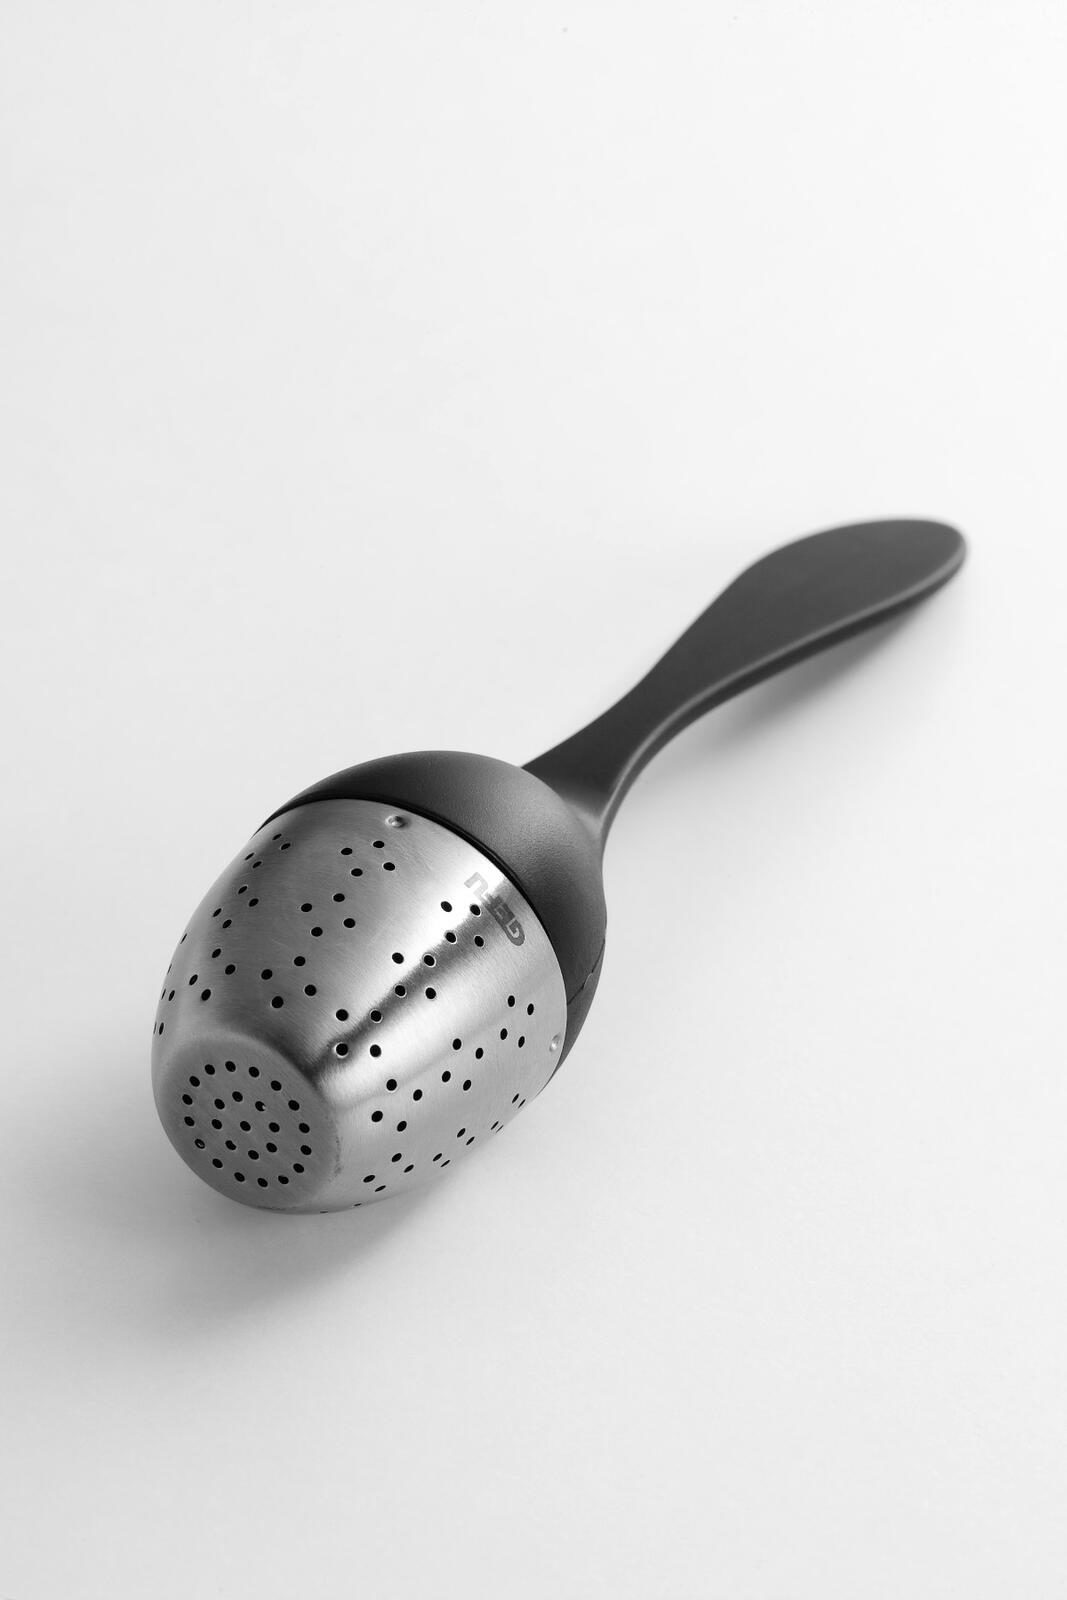 Küchenhelfer Gefu aus Kunststoff in Silber Schwarz GEFU Tee-Ei aus hochwertigem Edelstahl & Kunststoff